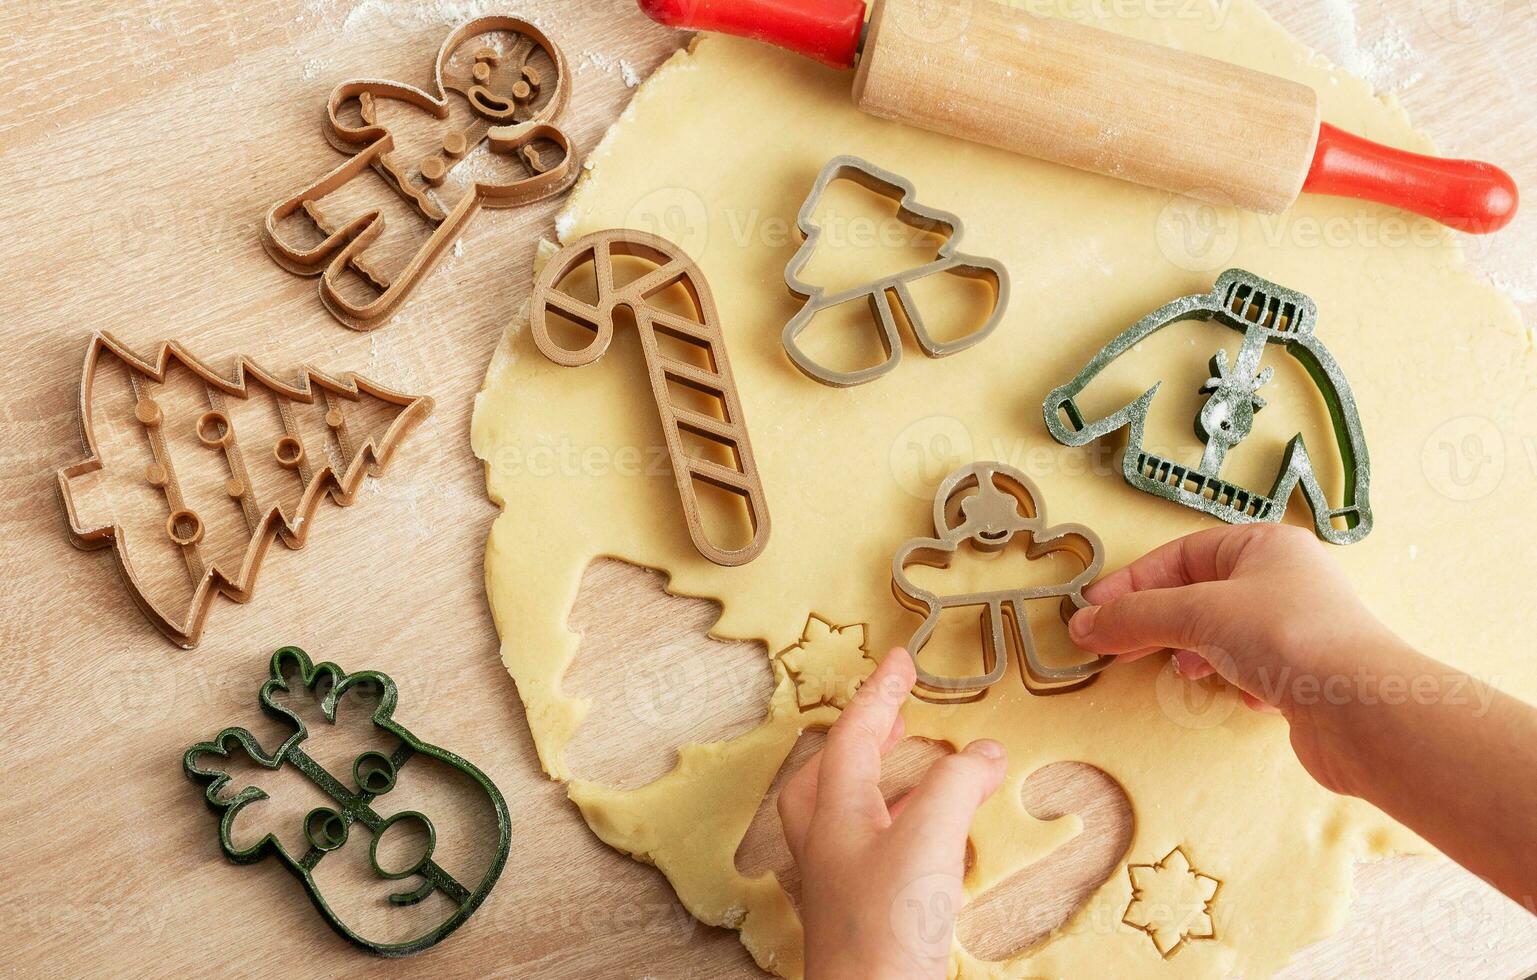 kinderen handen met peperkoek koekjes Aan houten achtergrond foto